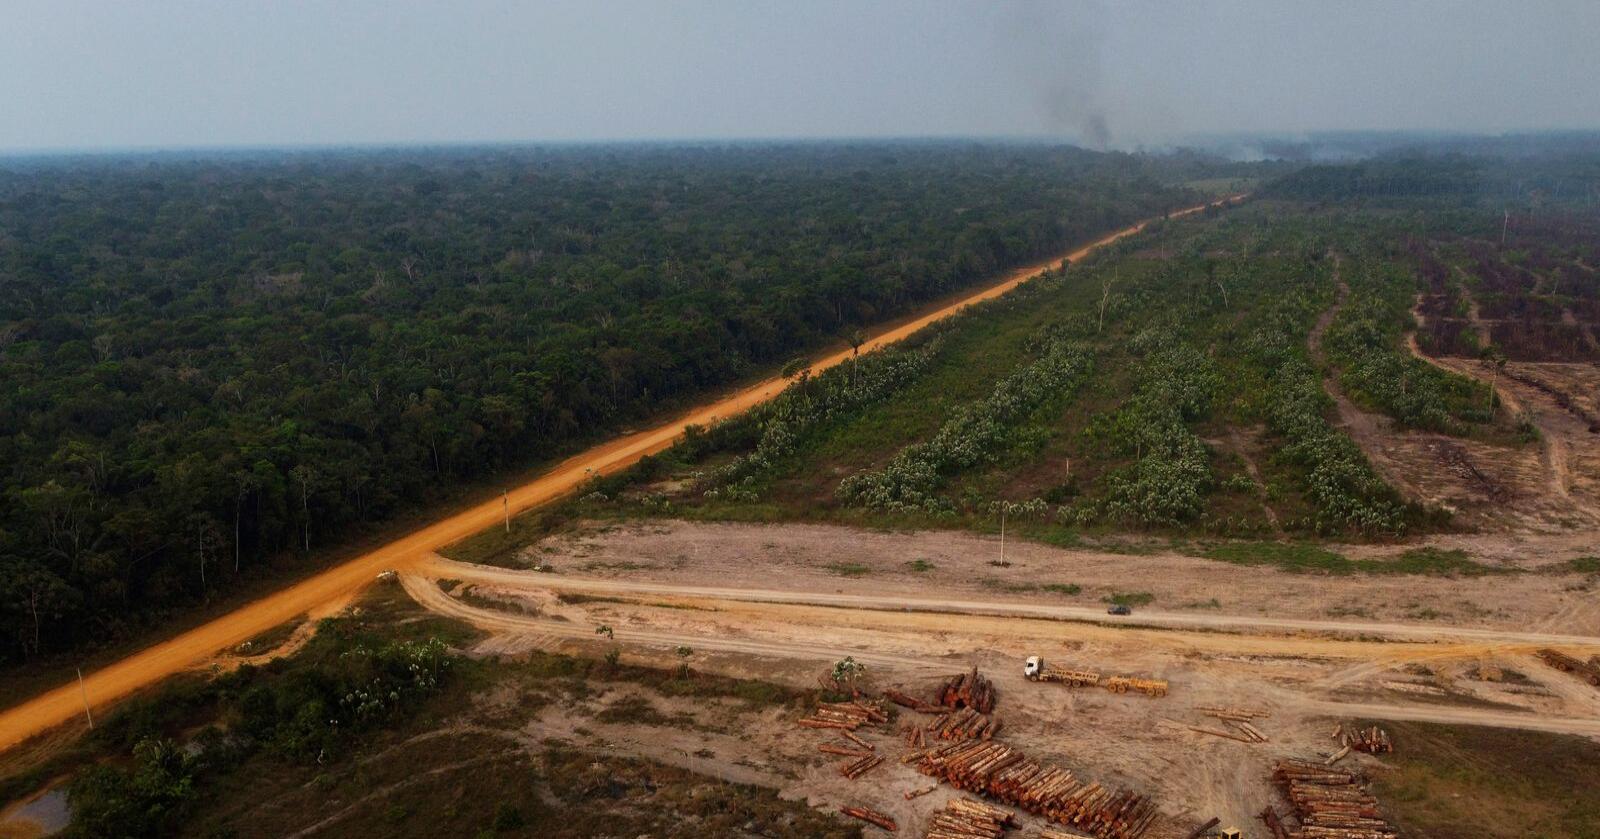 Det pågår en bitter kamp mellom de som ønsker å bevare regnskogen og de som vil utvinne blant annet tømmer. Brasils nye president Luiz Inácio Lula da Silva har lovet større beskyttelse av regnskogen og stanse avskogingen. Foto: AP / NTB